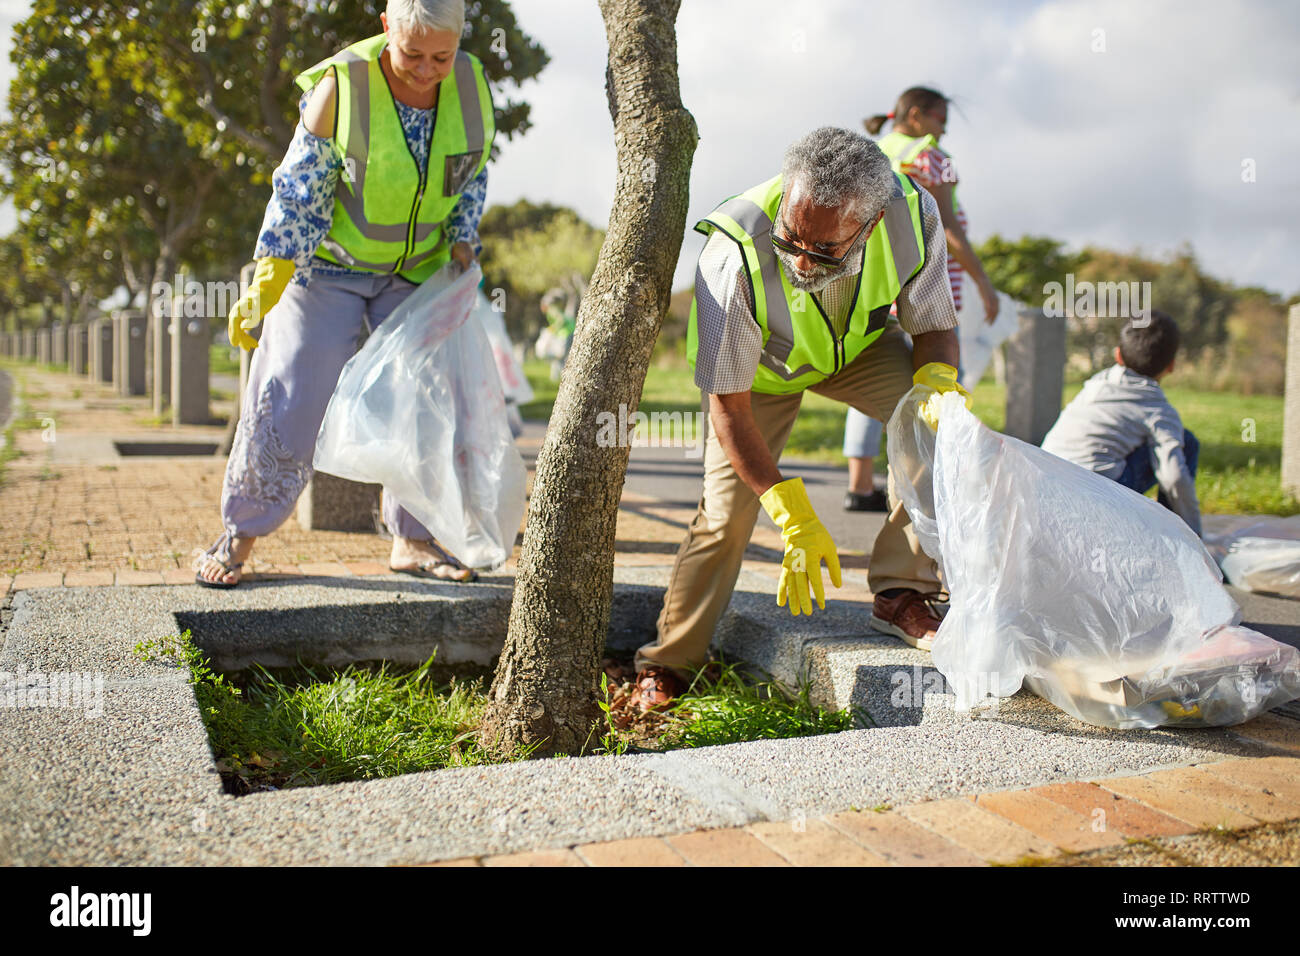 Los voluntarios mayores la limpieza de la basura en sunny park Foto de stock